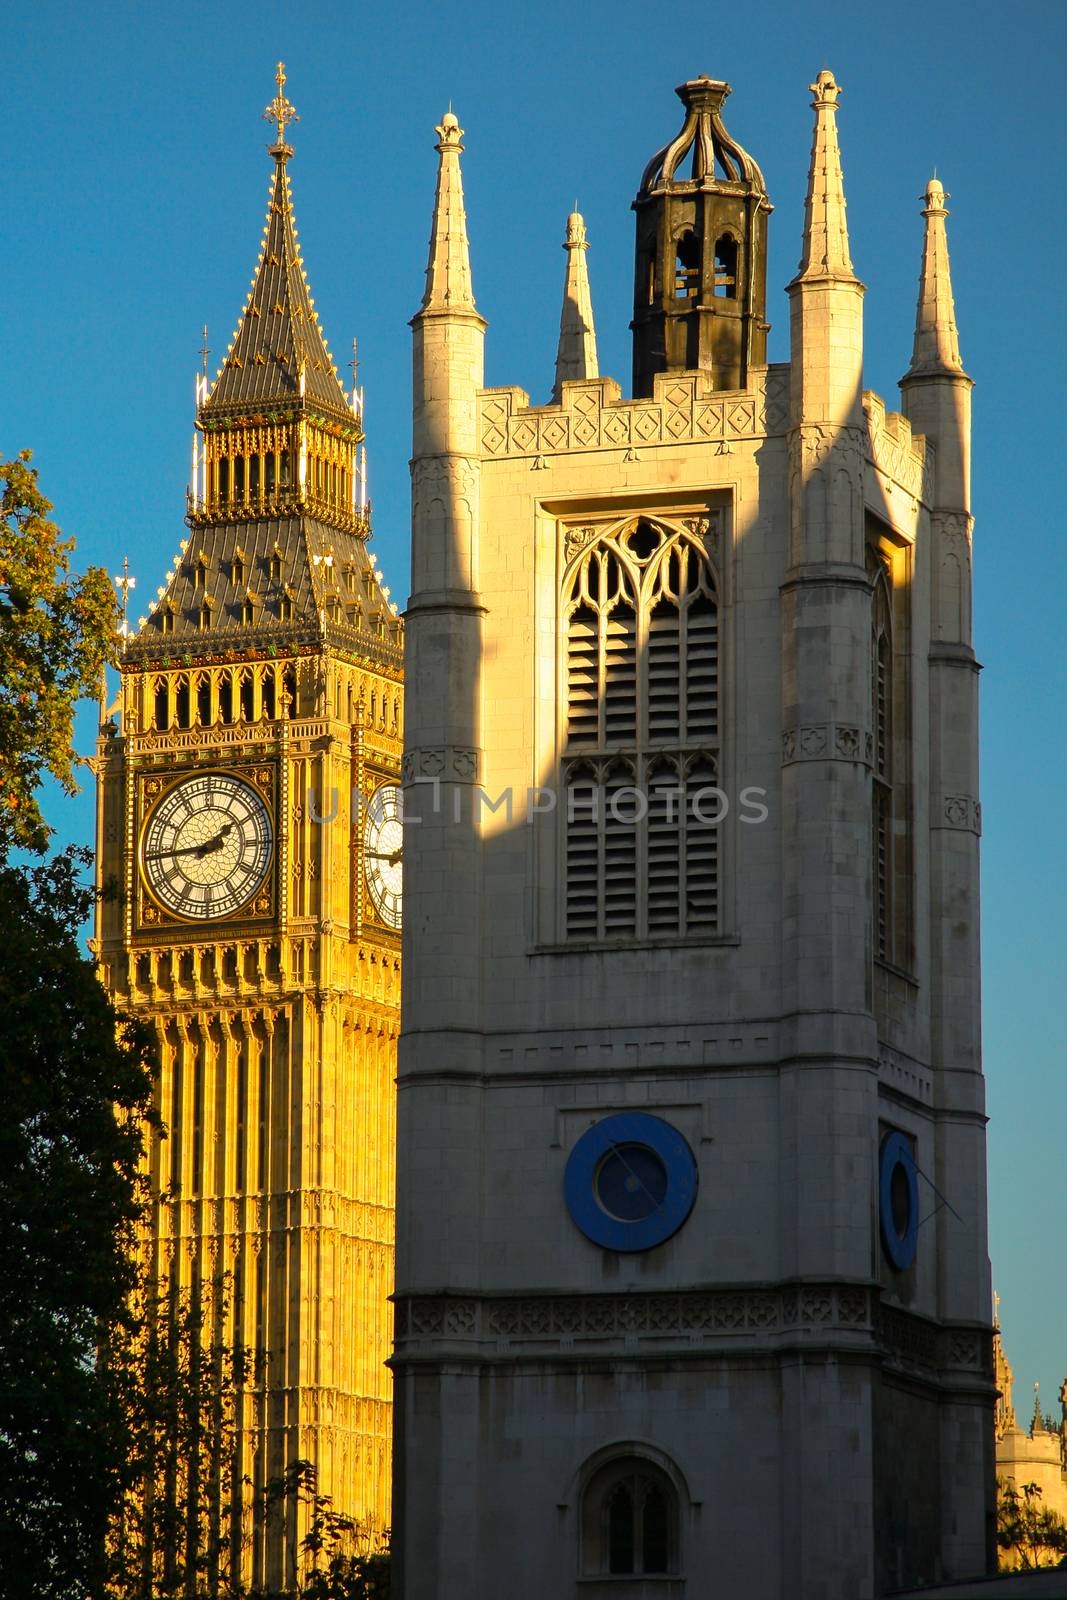 Big Ben in London by CelsoDiniz